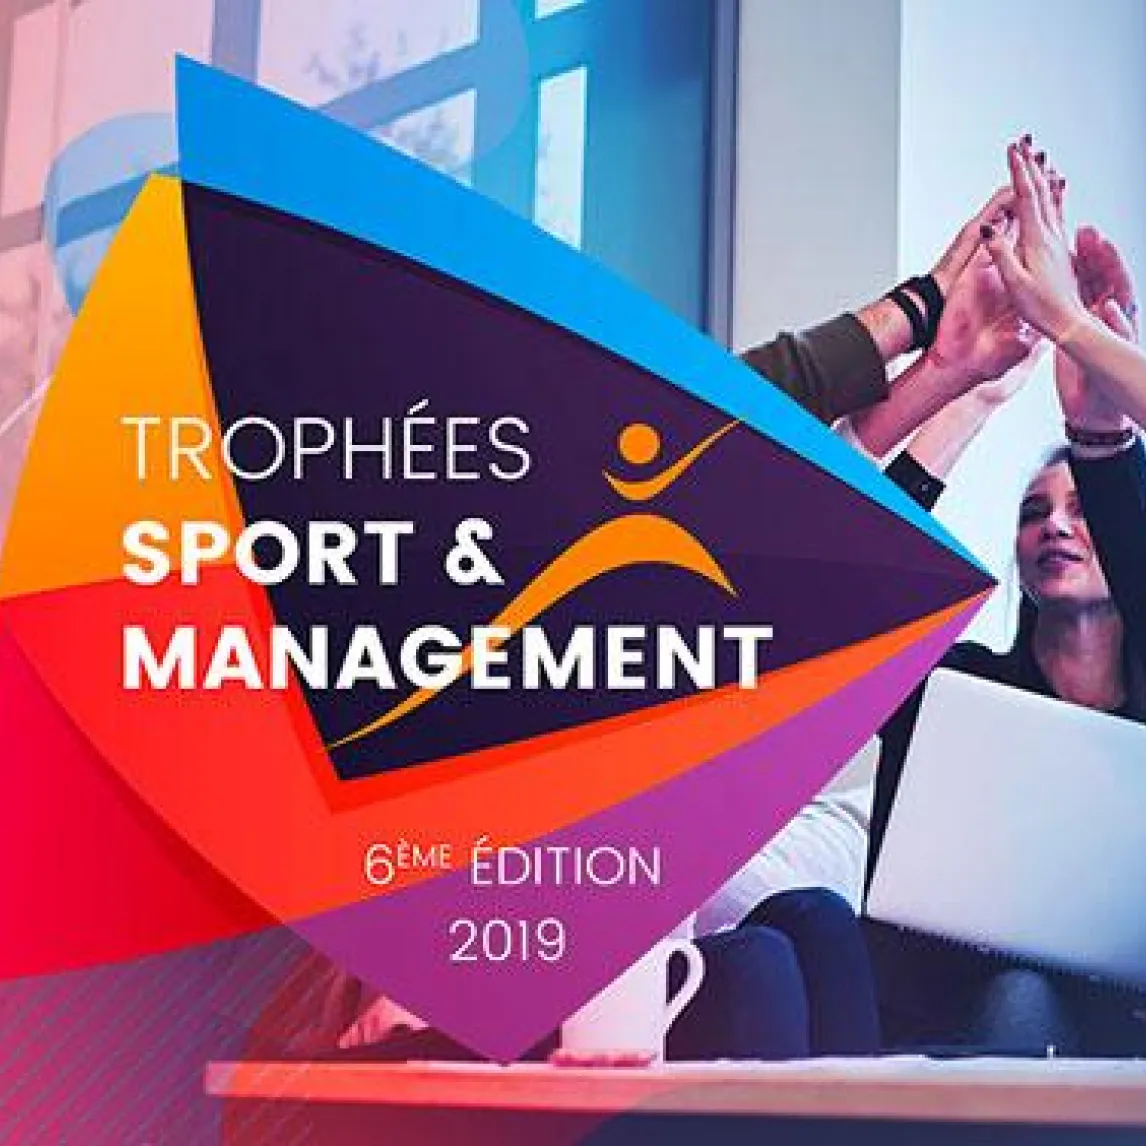 Appel a candidat trophées sport management